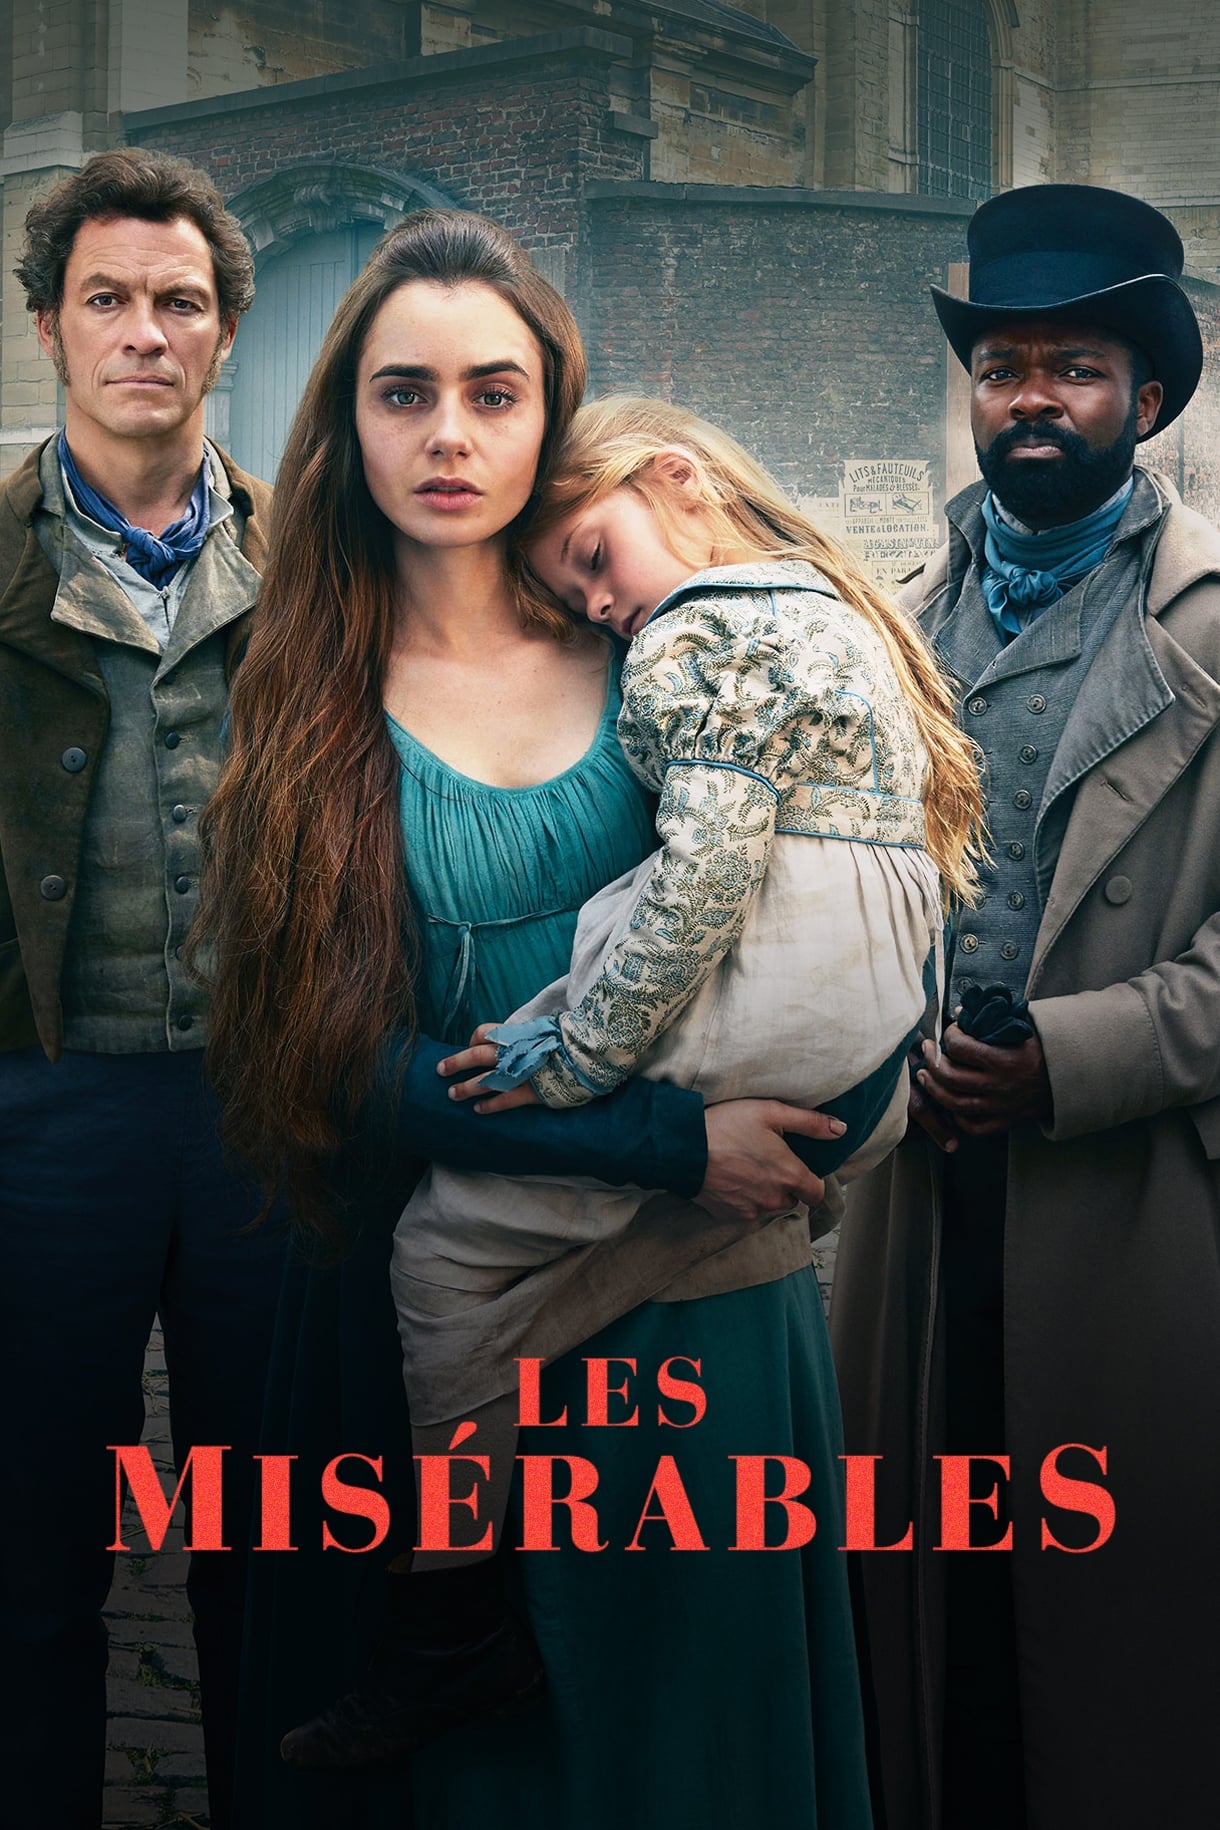 Les Misérables TV Shows About France